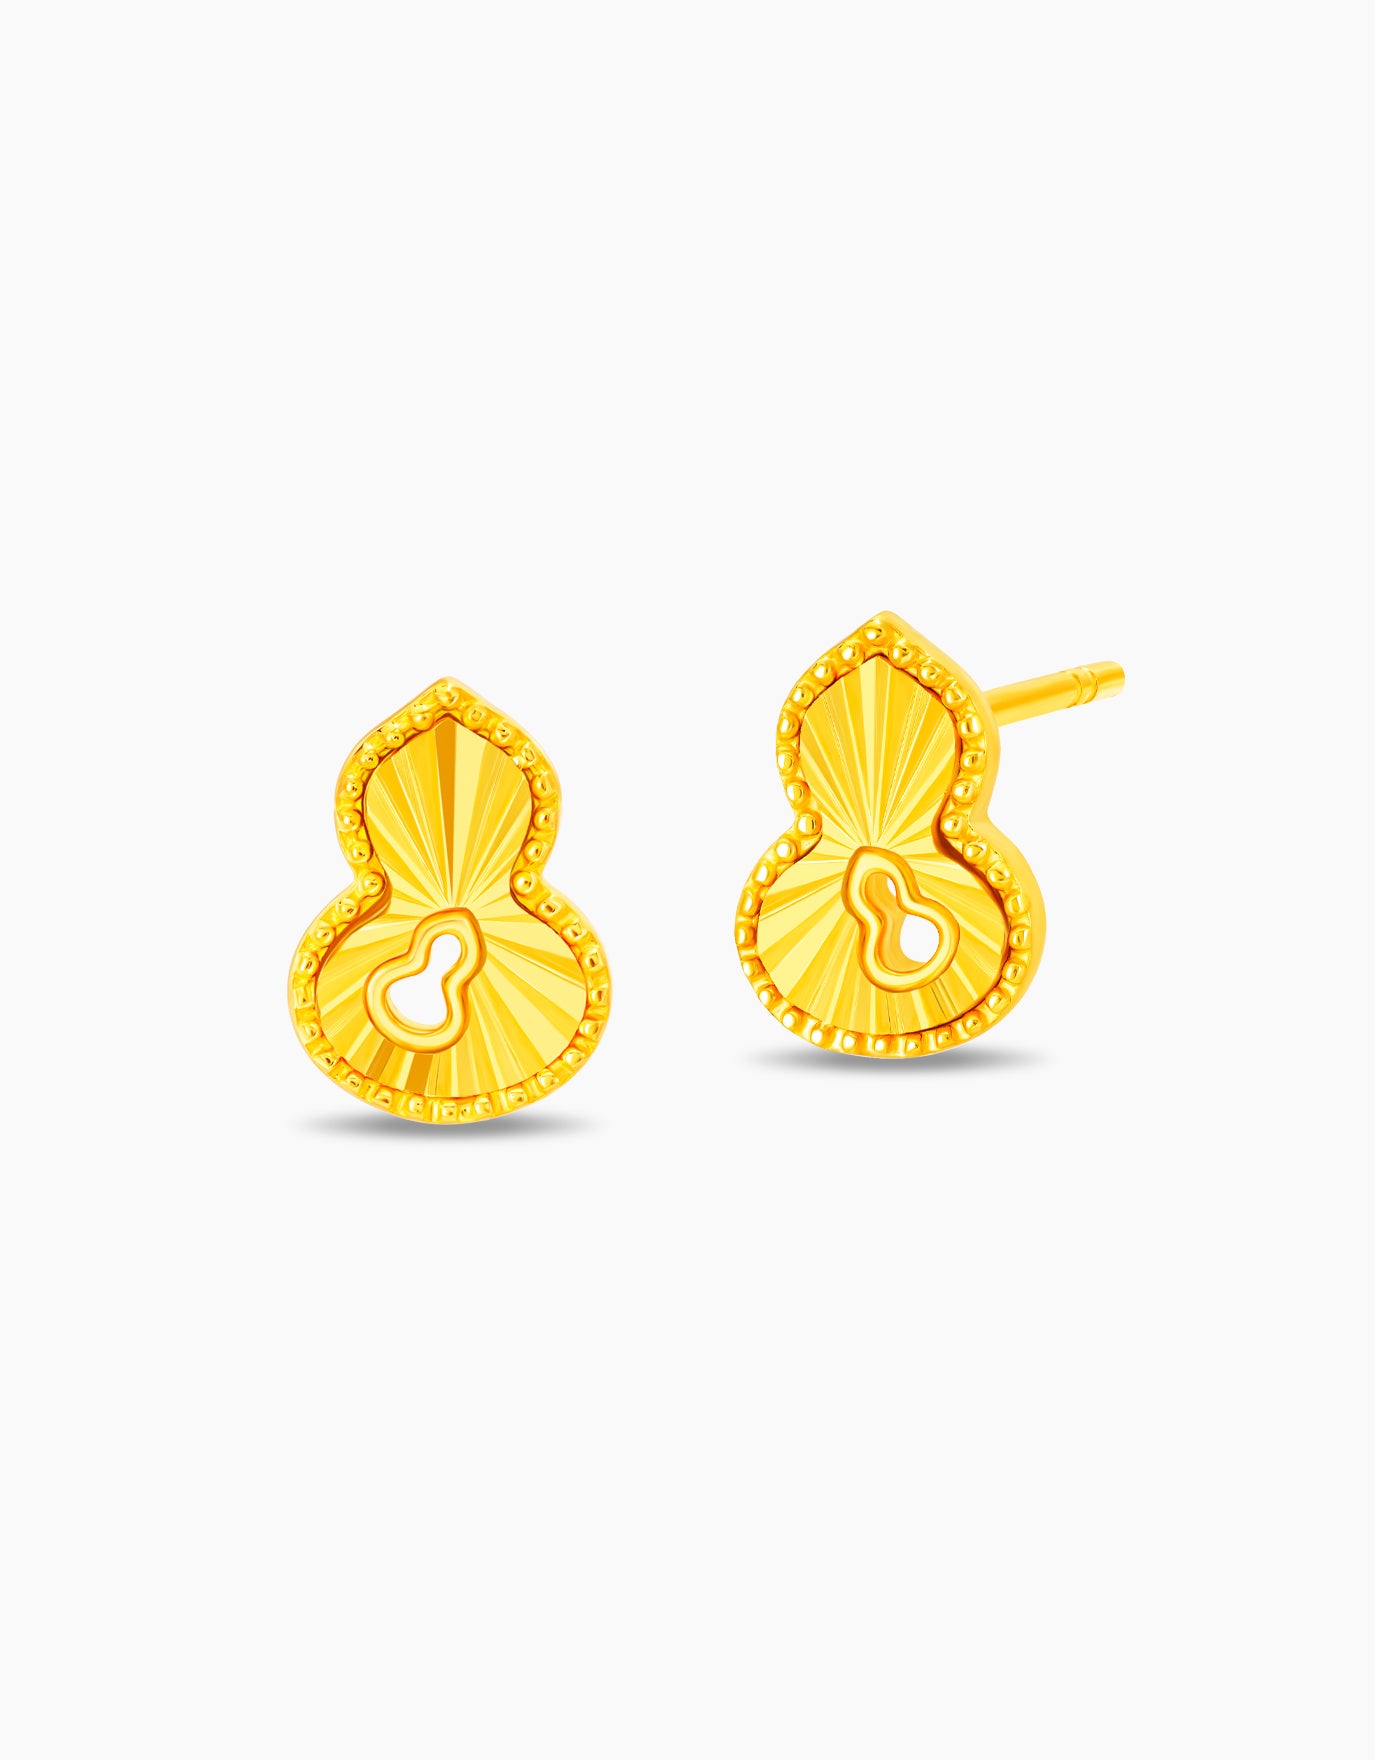 LVC 9IN Swirl Hulu 999 Gold Earrings